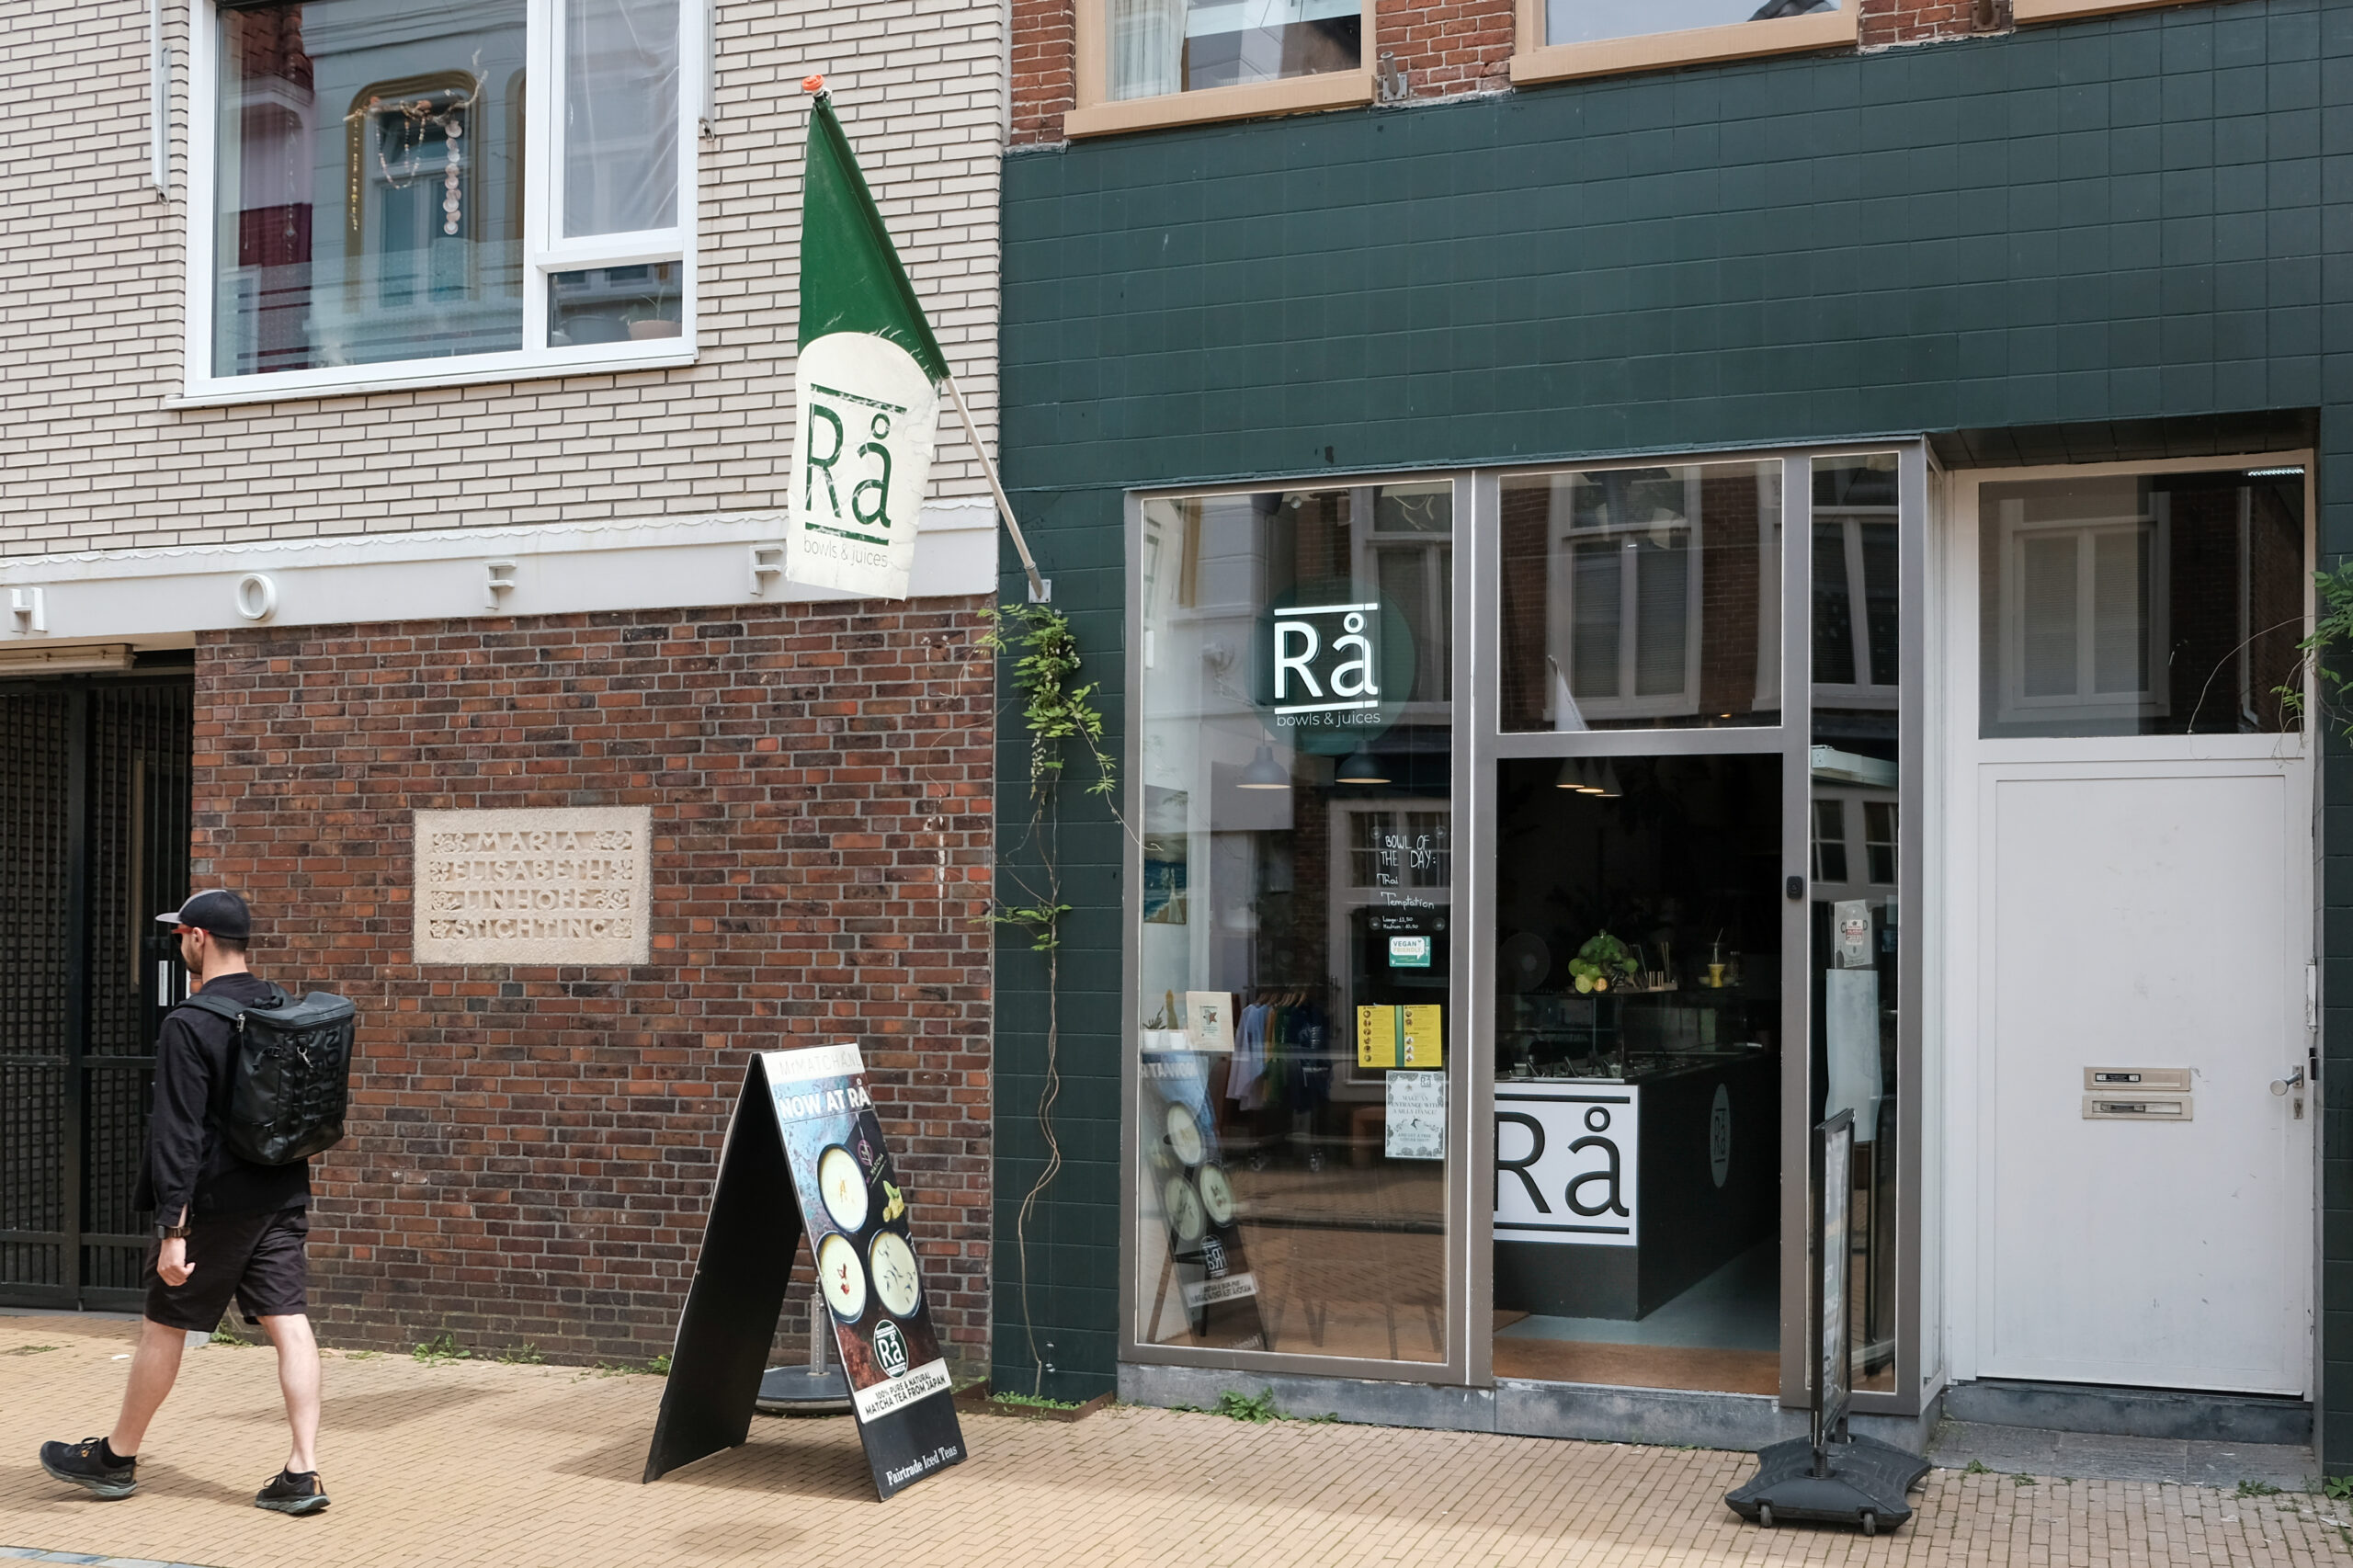 Ra saladbar - Oude Kijk in't Jatstraat 59 in Groningen